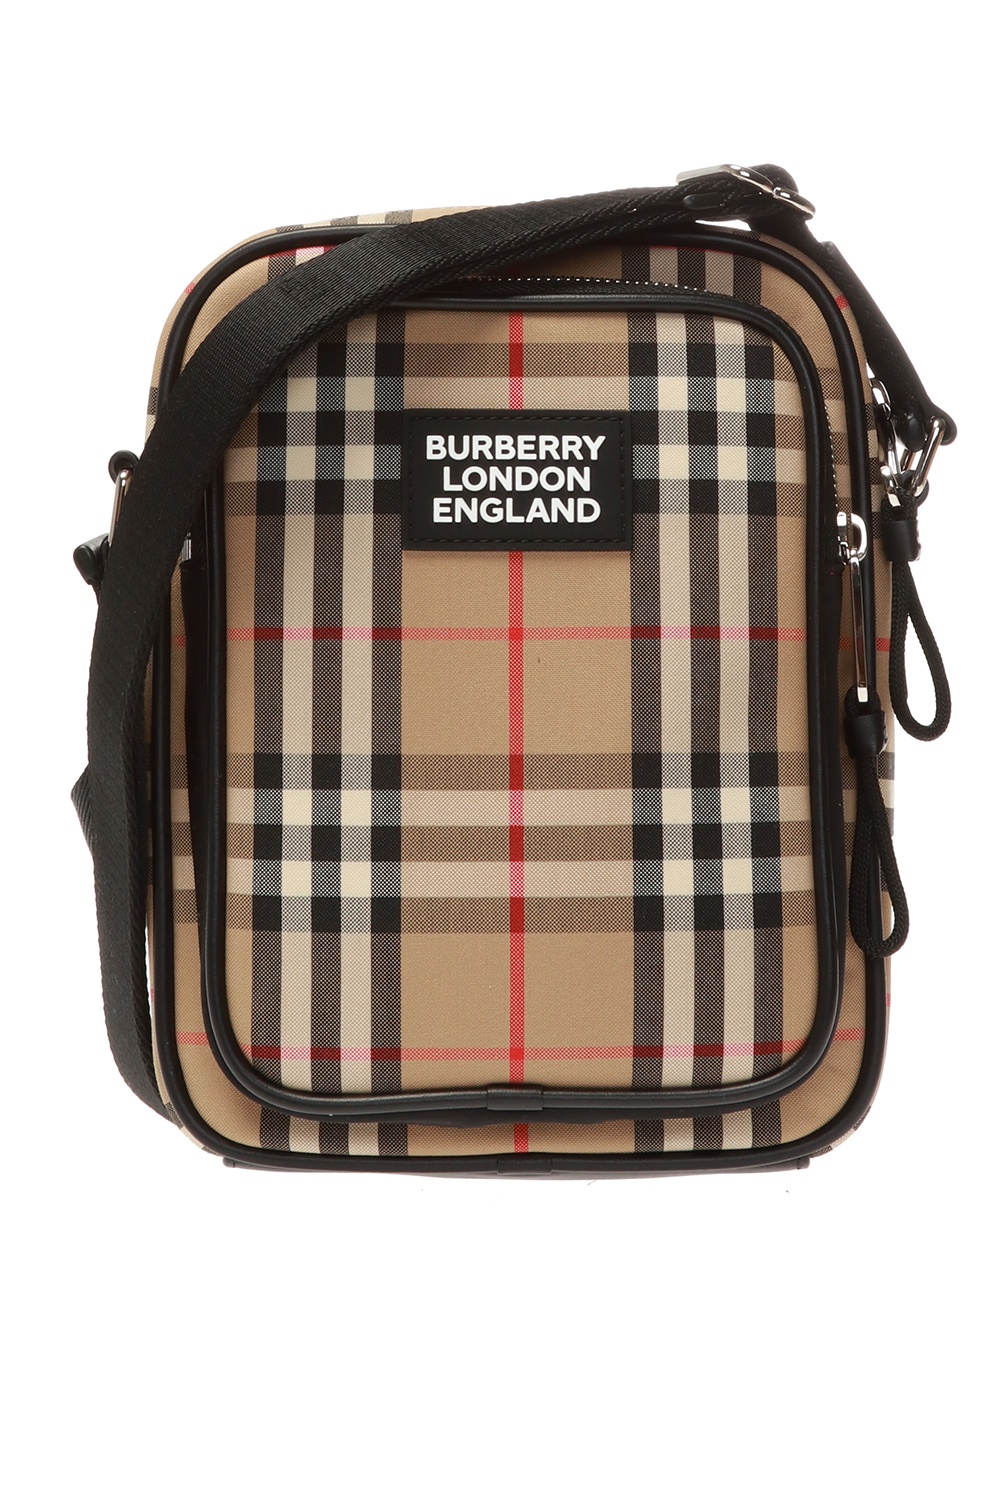 Burberry Branded shoulder bag